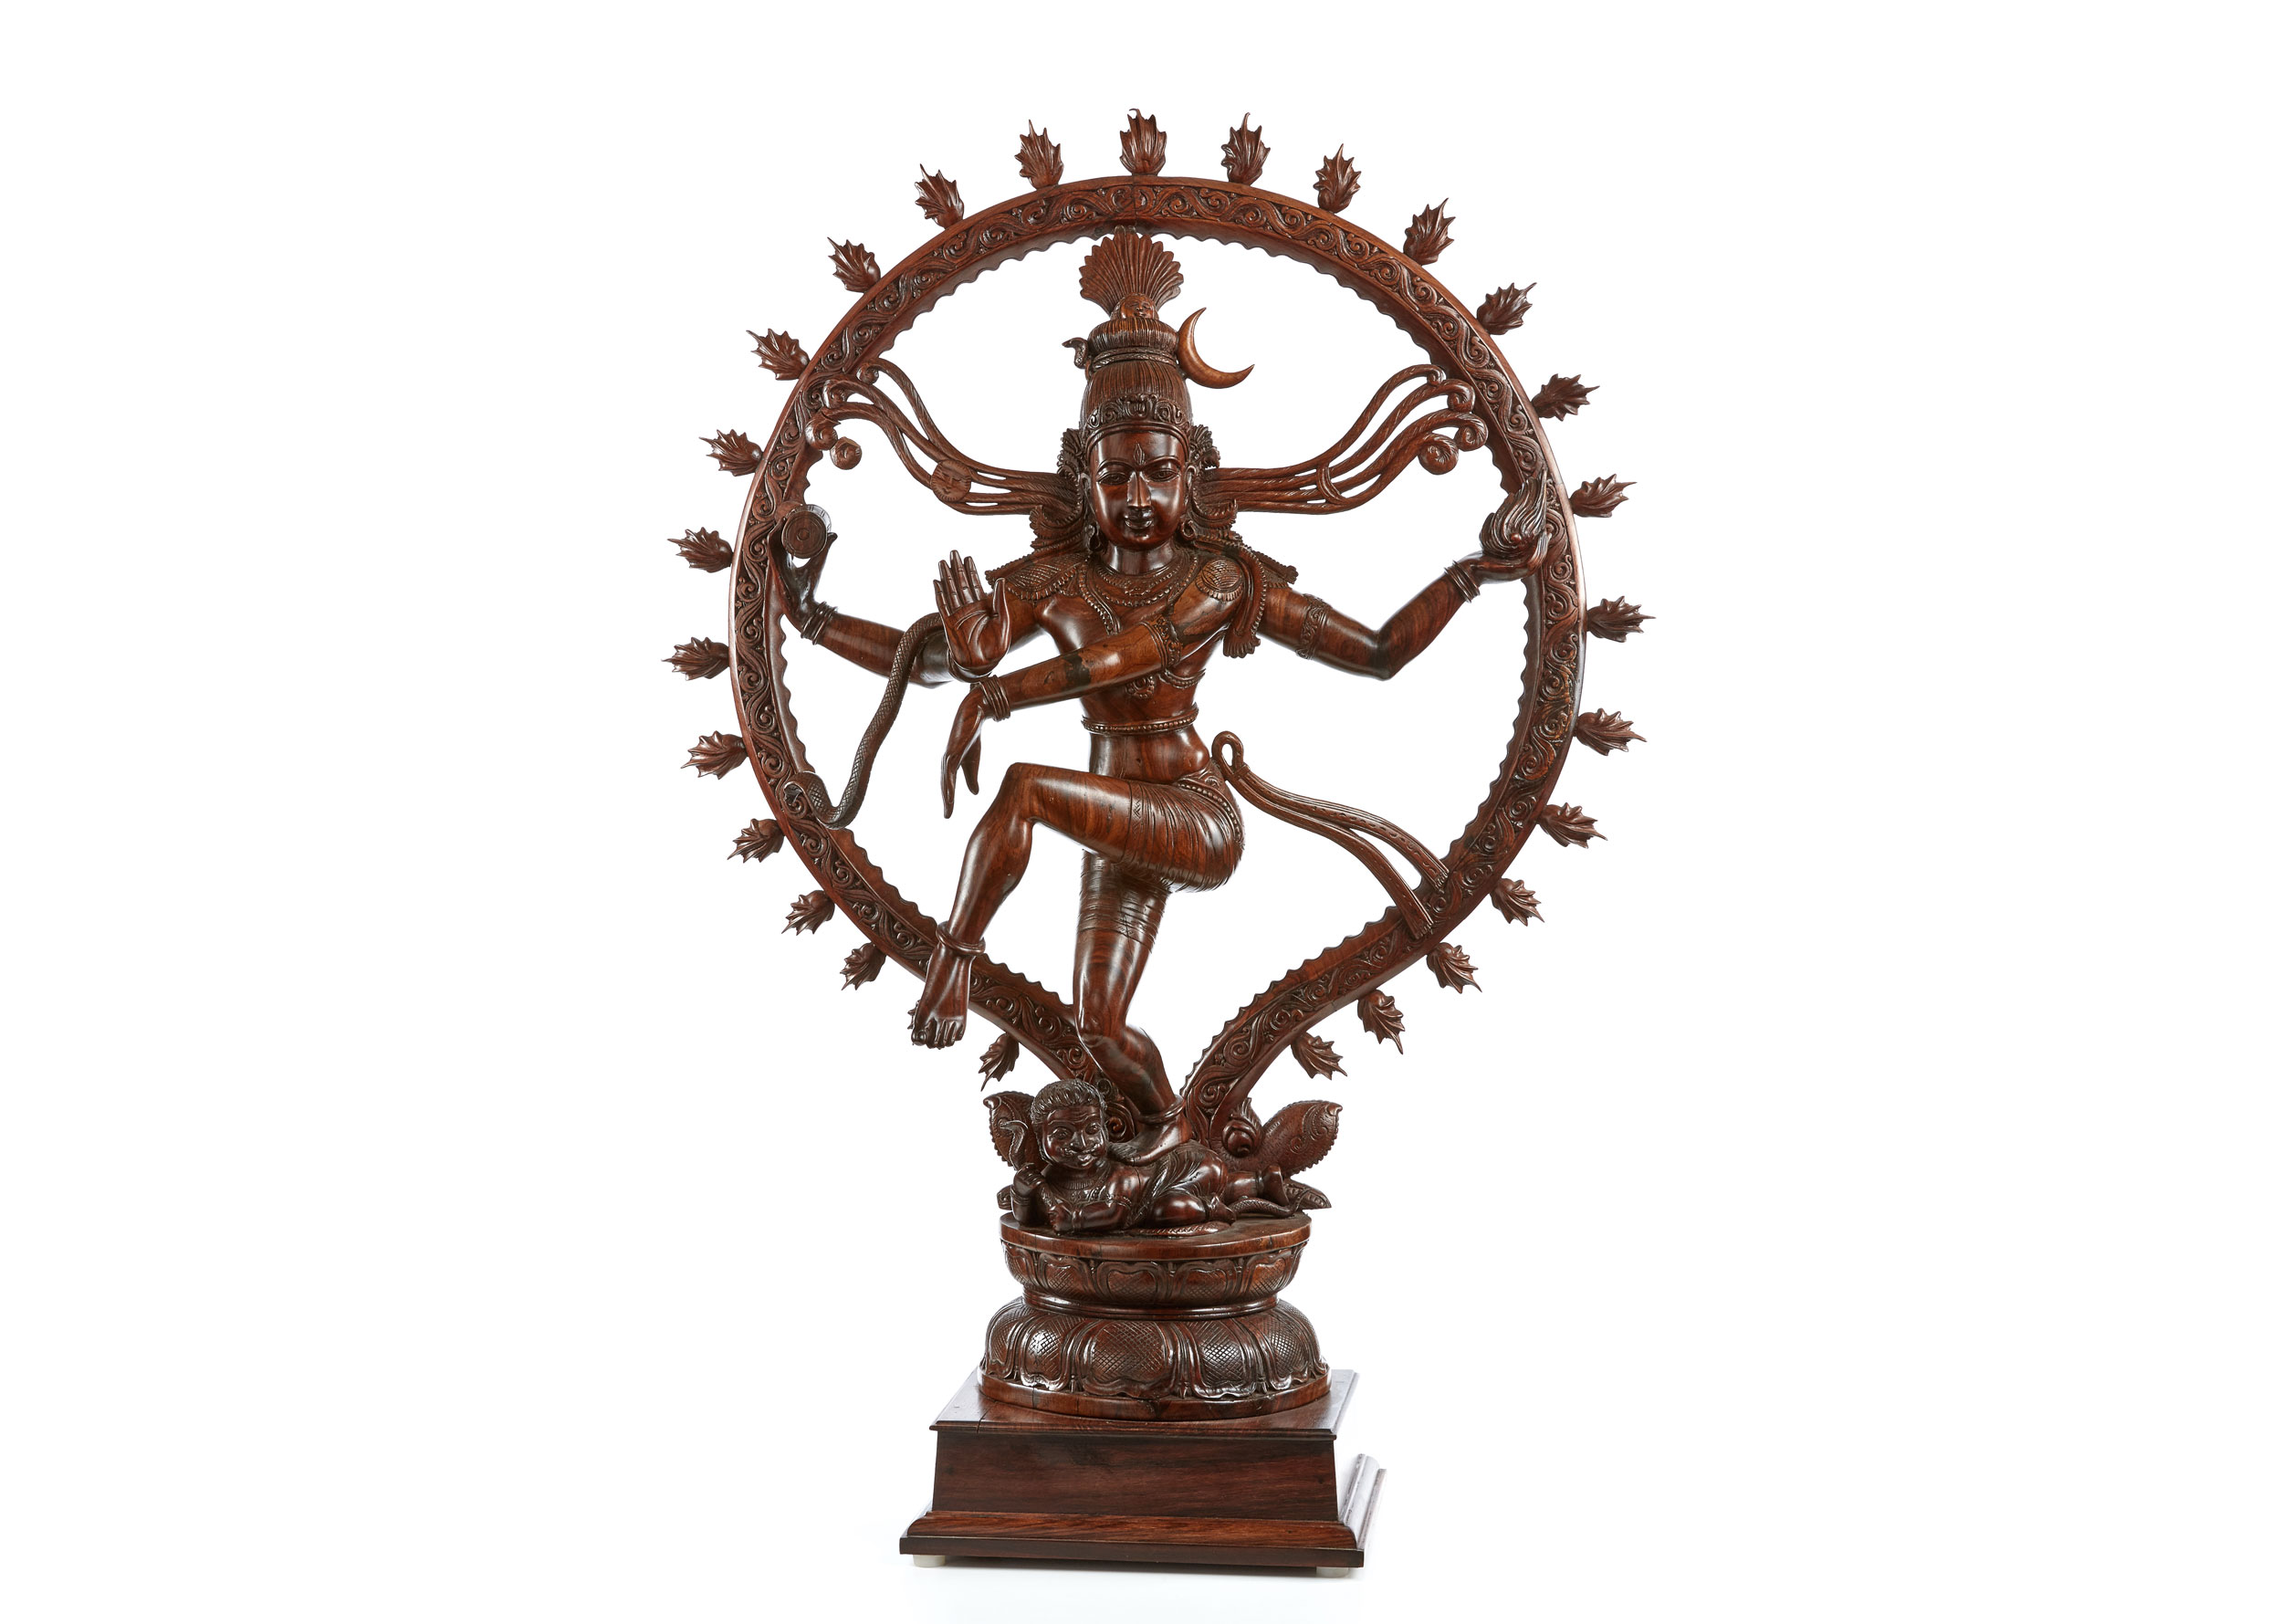 Shiva Nataraja, Gott der Schöpfung und Zerstörung